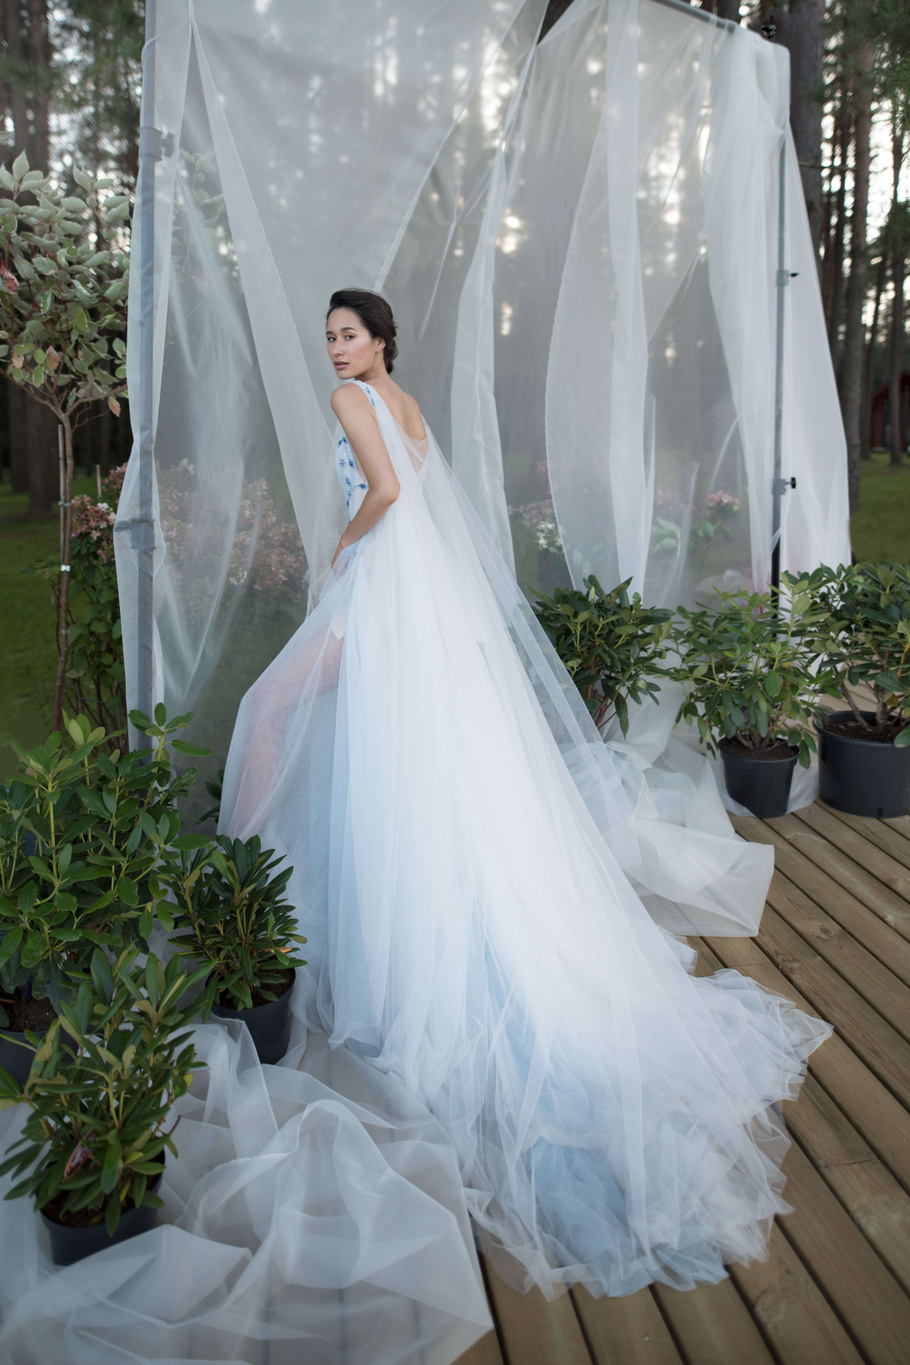 Купить свадебное платье «Винслоу» Бламмо Биамо из коллекции Нимфа 2020 года в Санкт-Петербурге